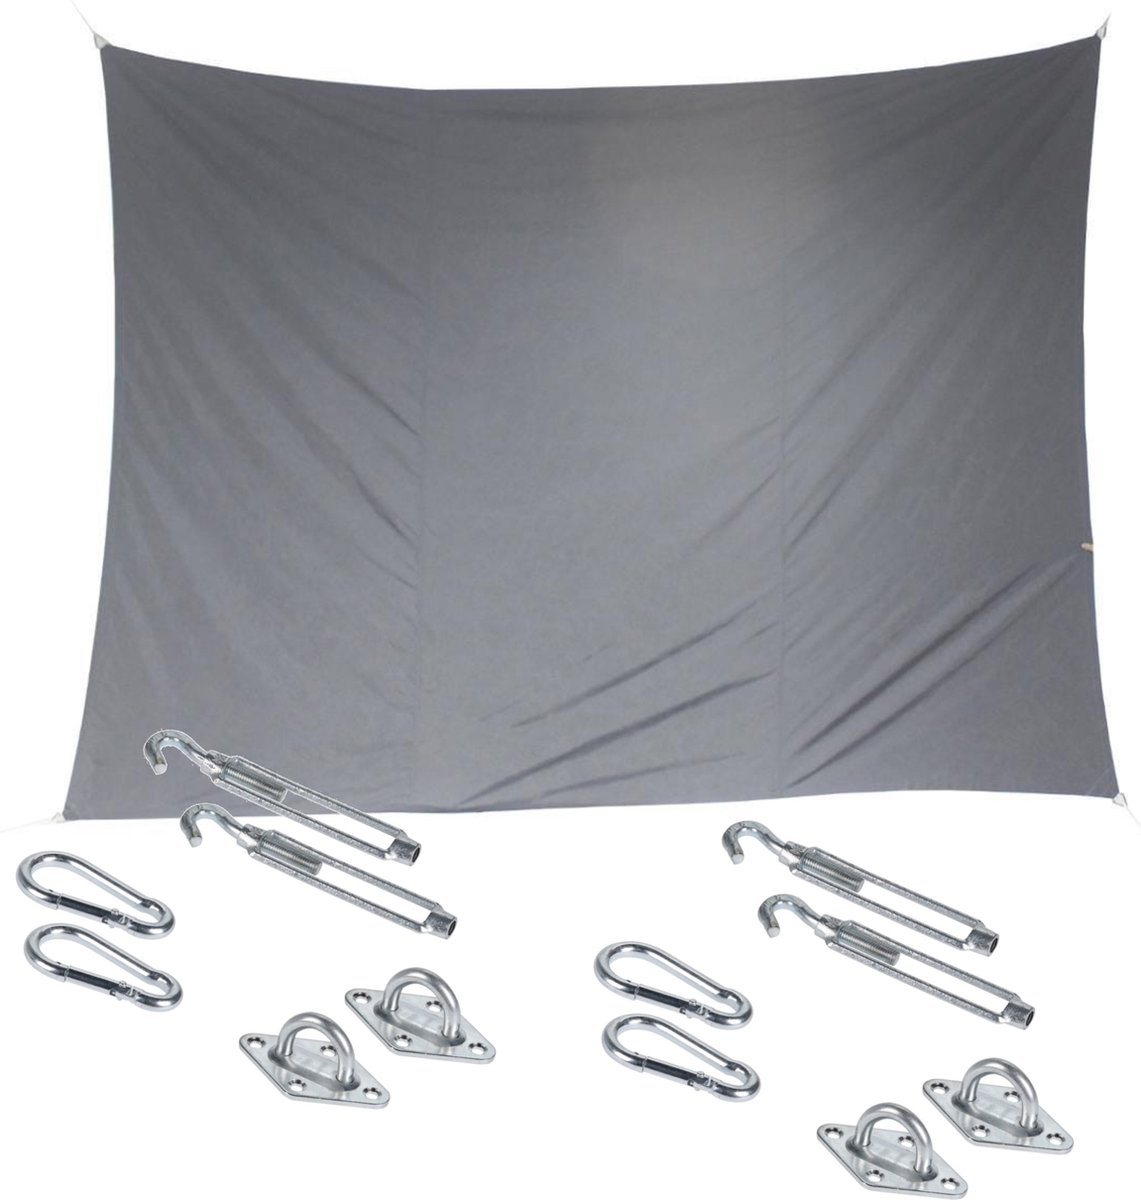 Premium kwaliteit schaduwdoek/zonnescherm Shae rechthoekig grijs 3 x 4 meter - inclusief bevestiging haken set